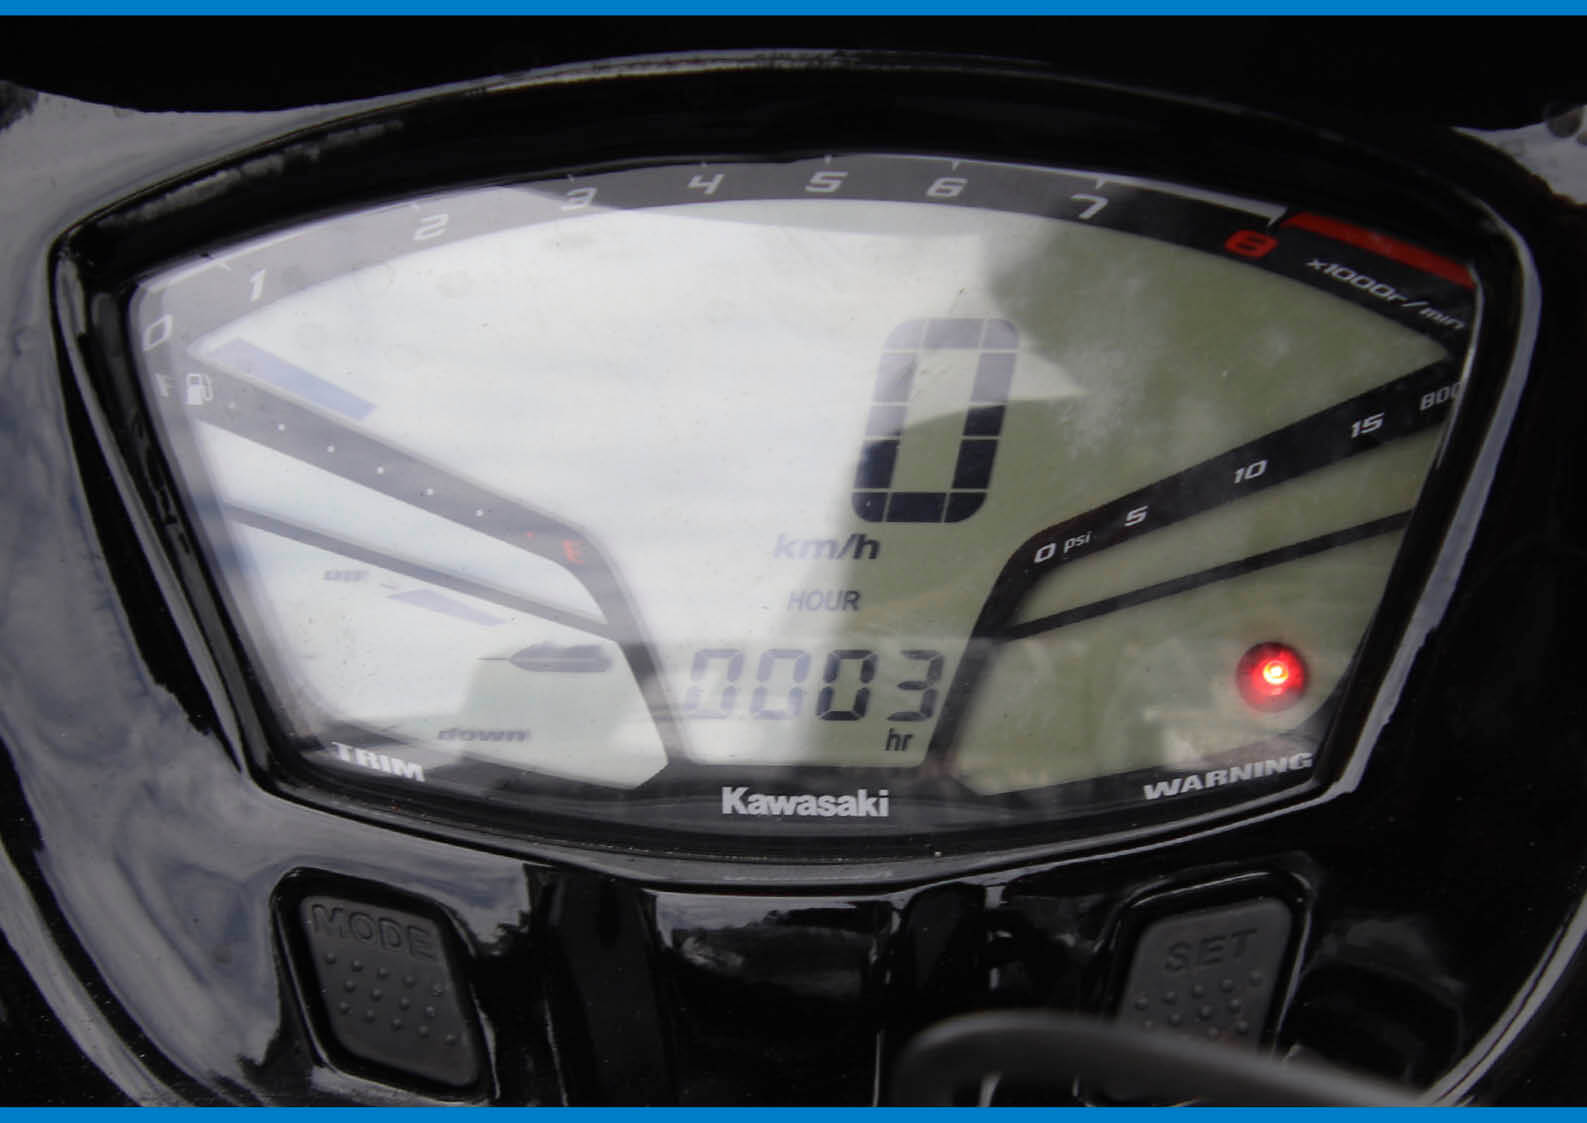 アワーメーターの意味を知っていますか クルマは走行距離 ジェットはアワーメーター ジェットスキー 水上バイク ワールドジェットスポーツマガジン